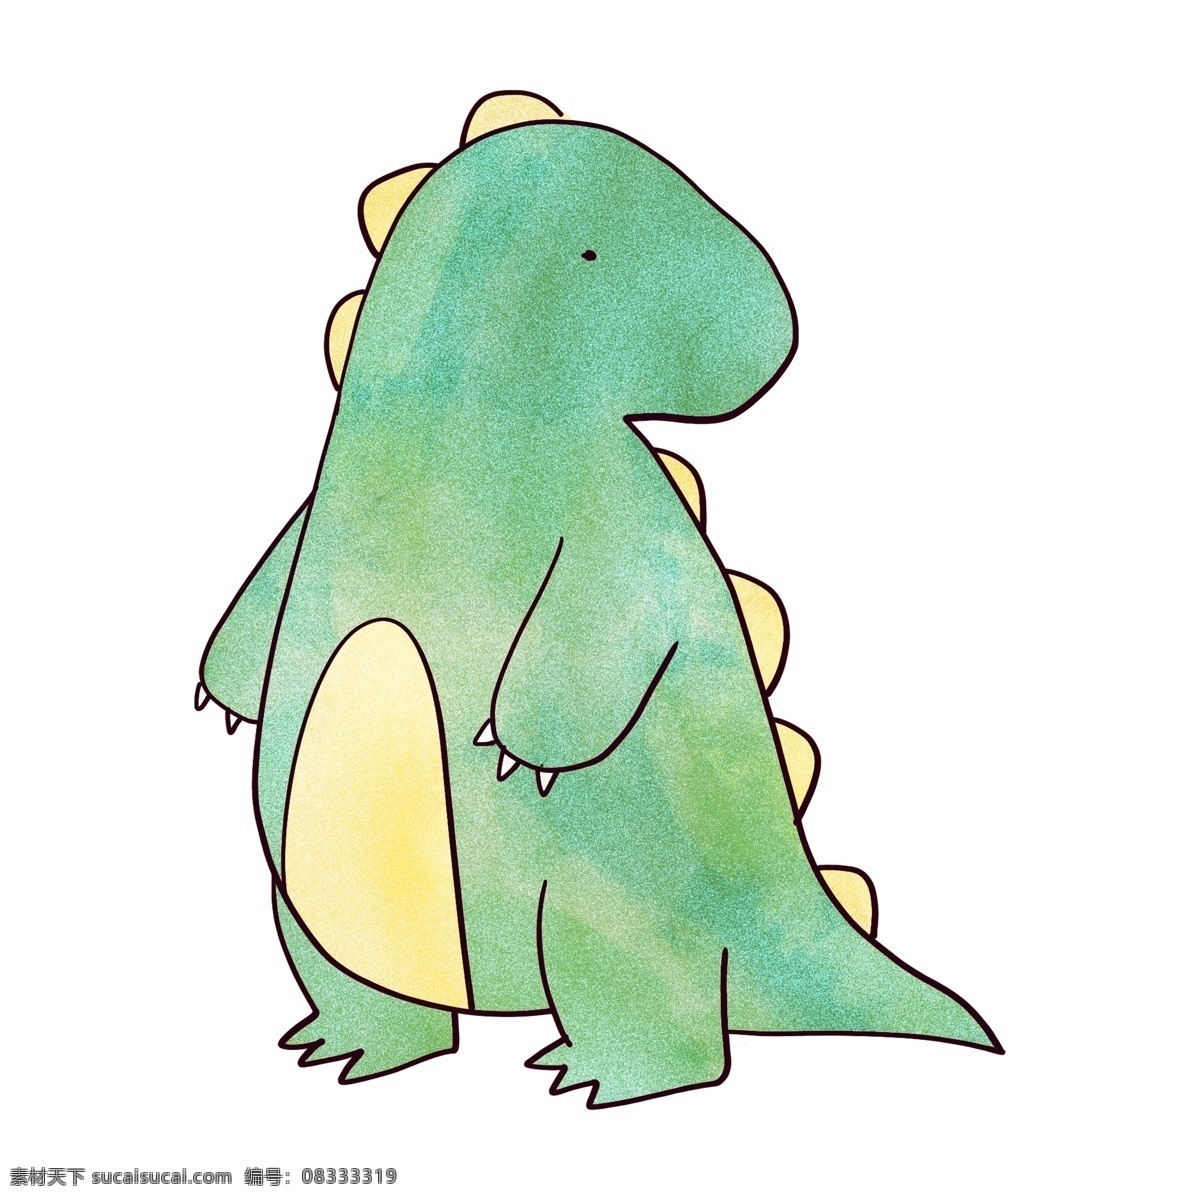 后 看 绿色 小 恐龙 向后看的恐龙 砖头的恐龙 绿色的小恐龙 小眼睛 小巧 可爱 动物世界